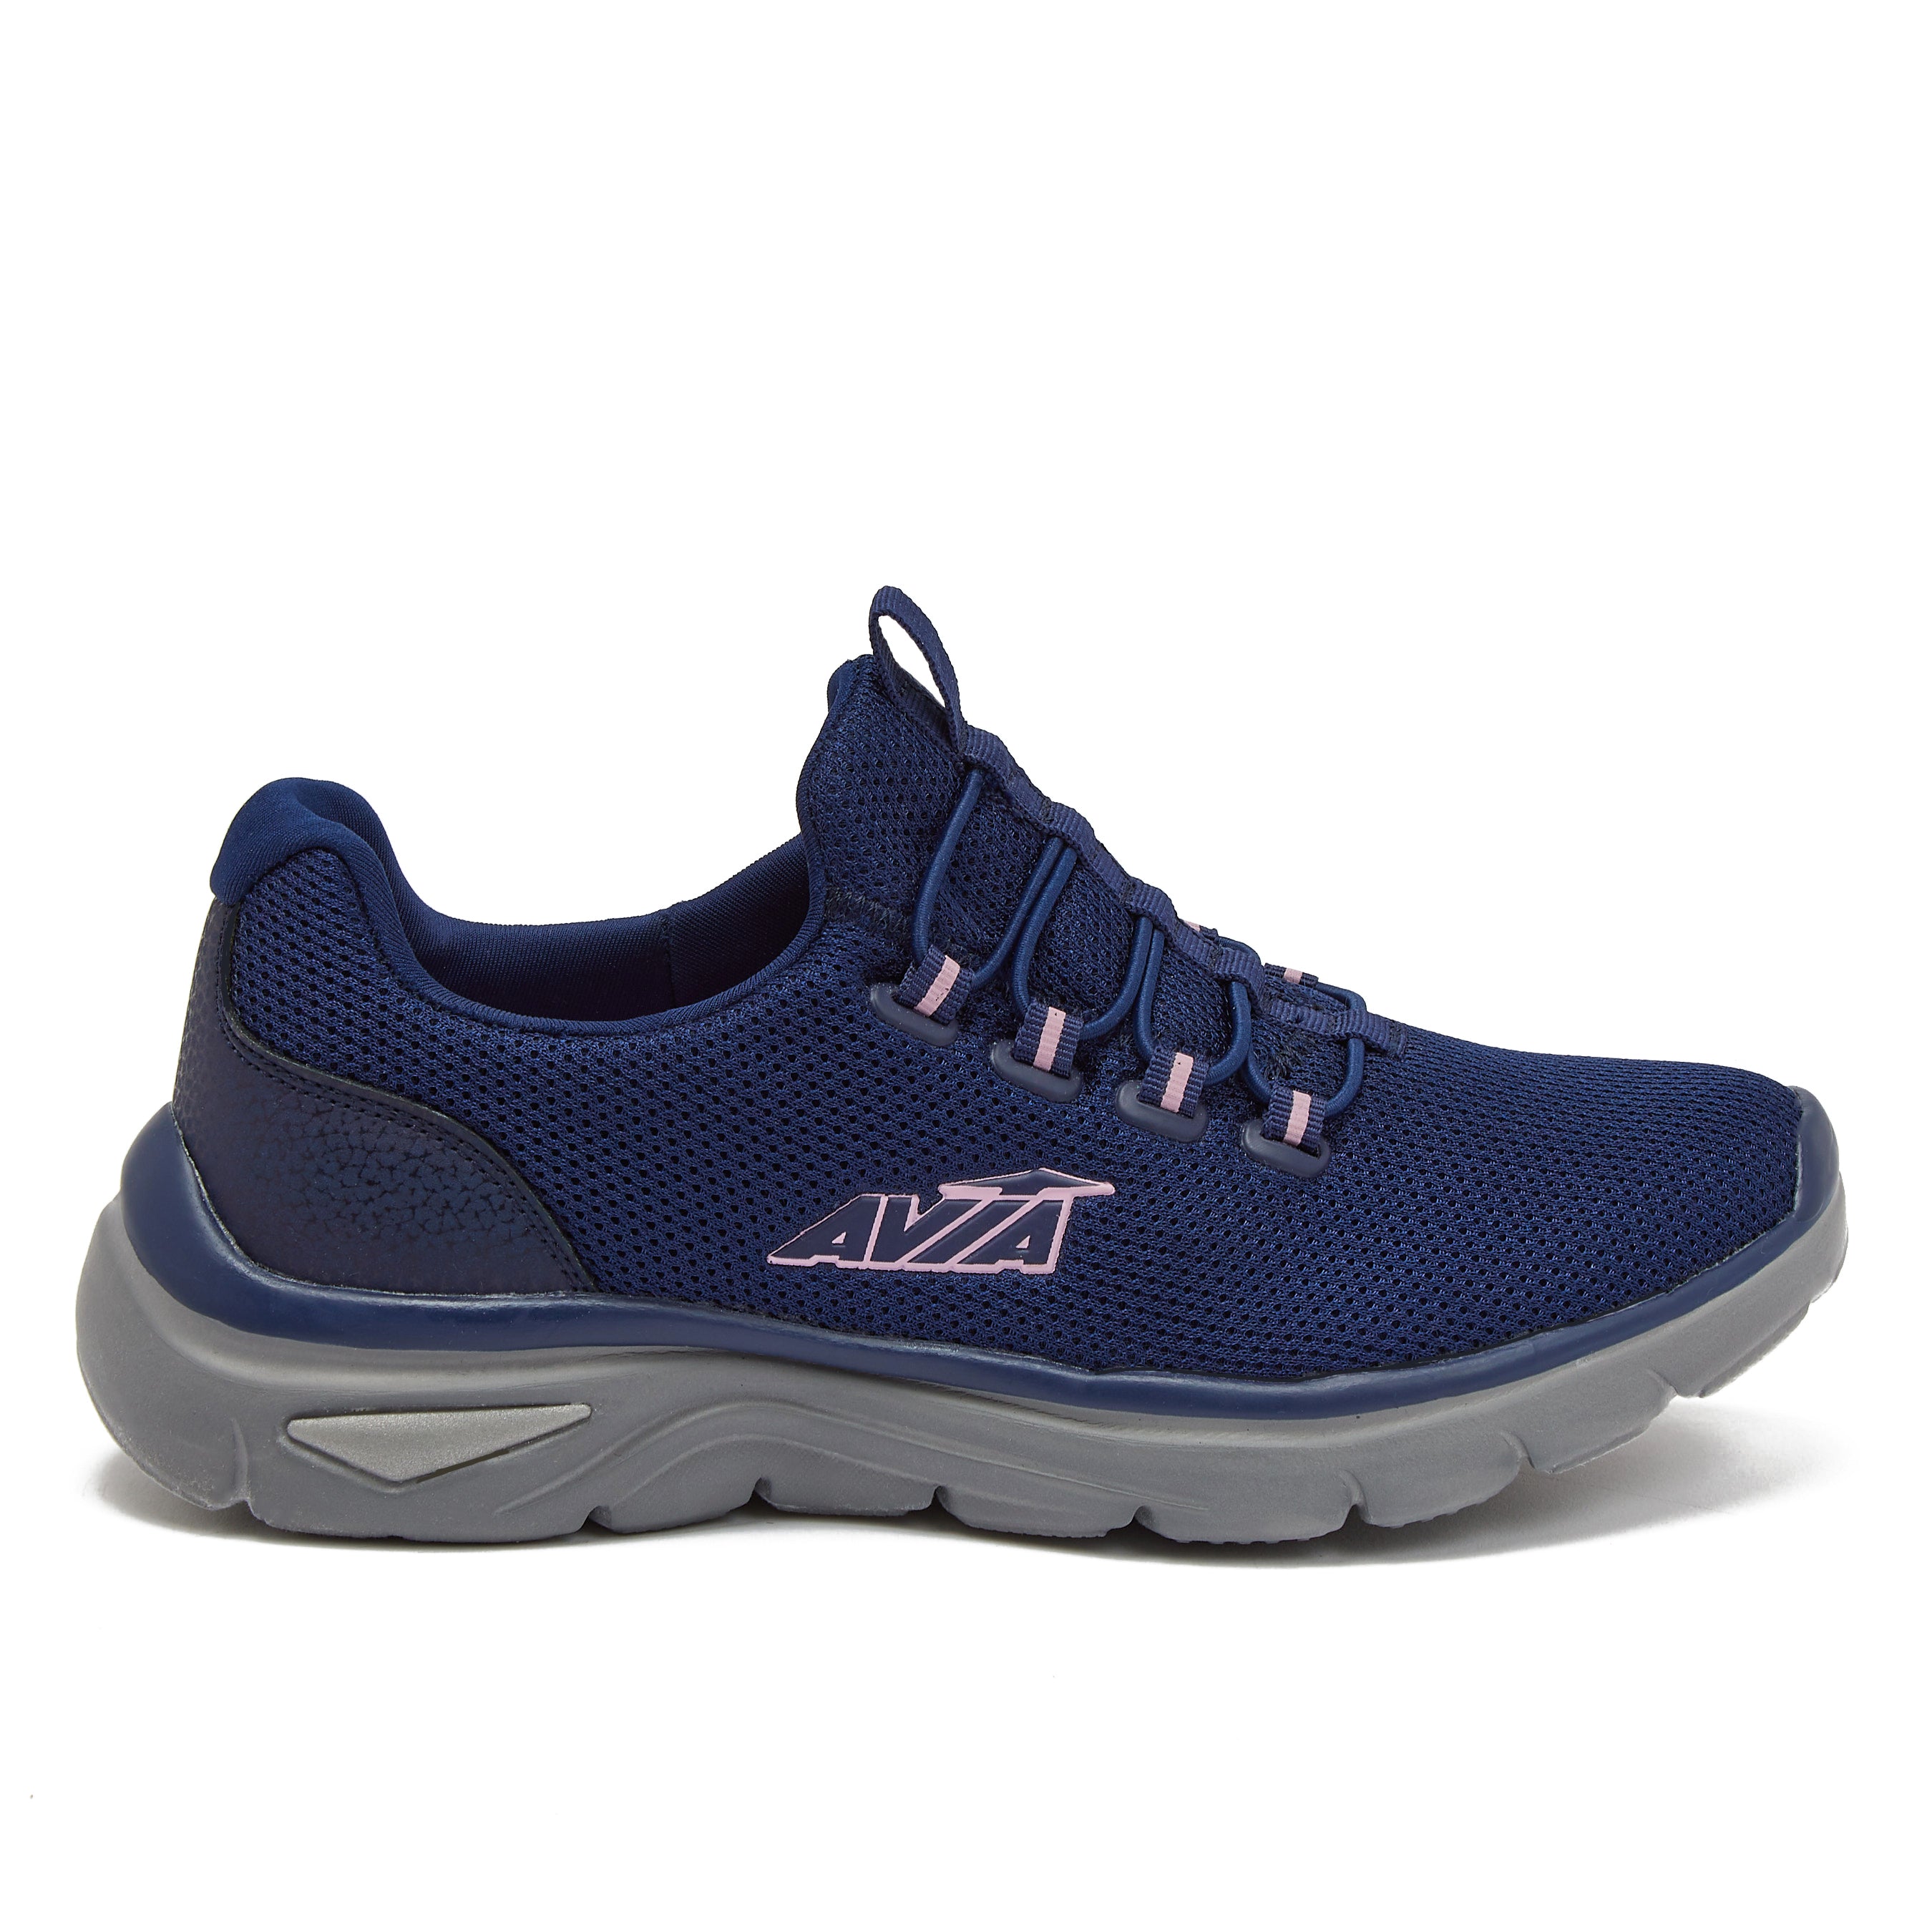 Avia Coast 2.0 Lightweight Memory Foam Walking Sneakers for Women - Black,  Olive Green, or Blue